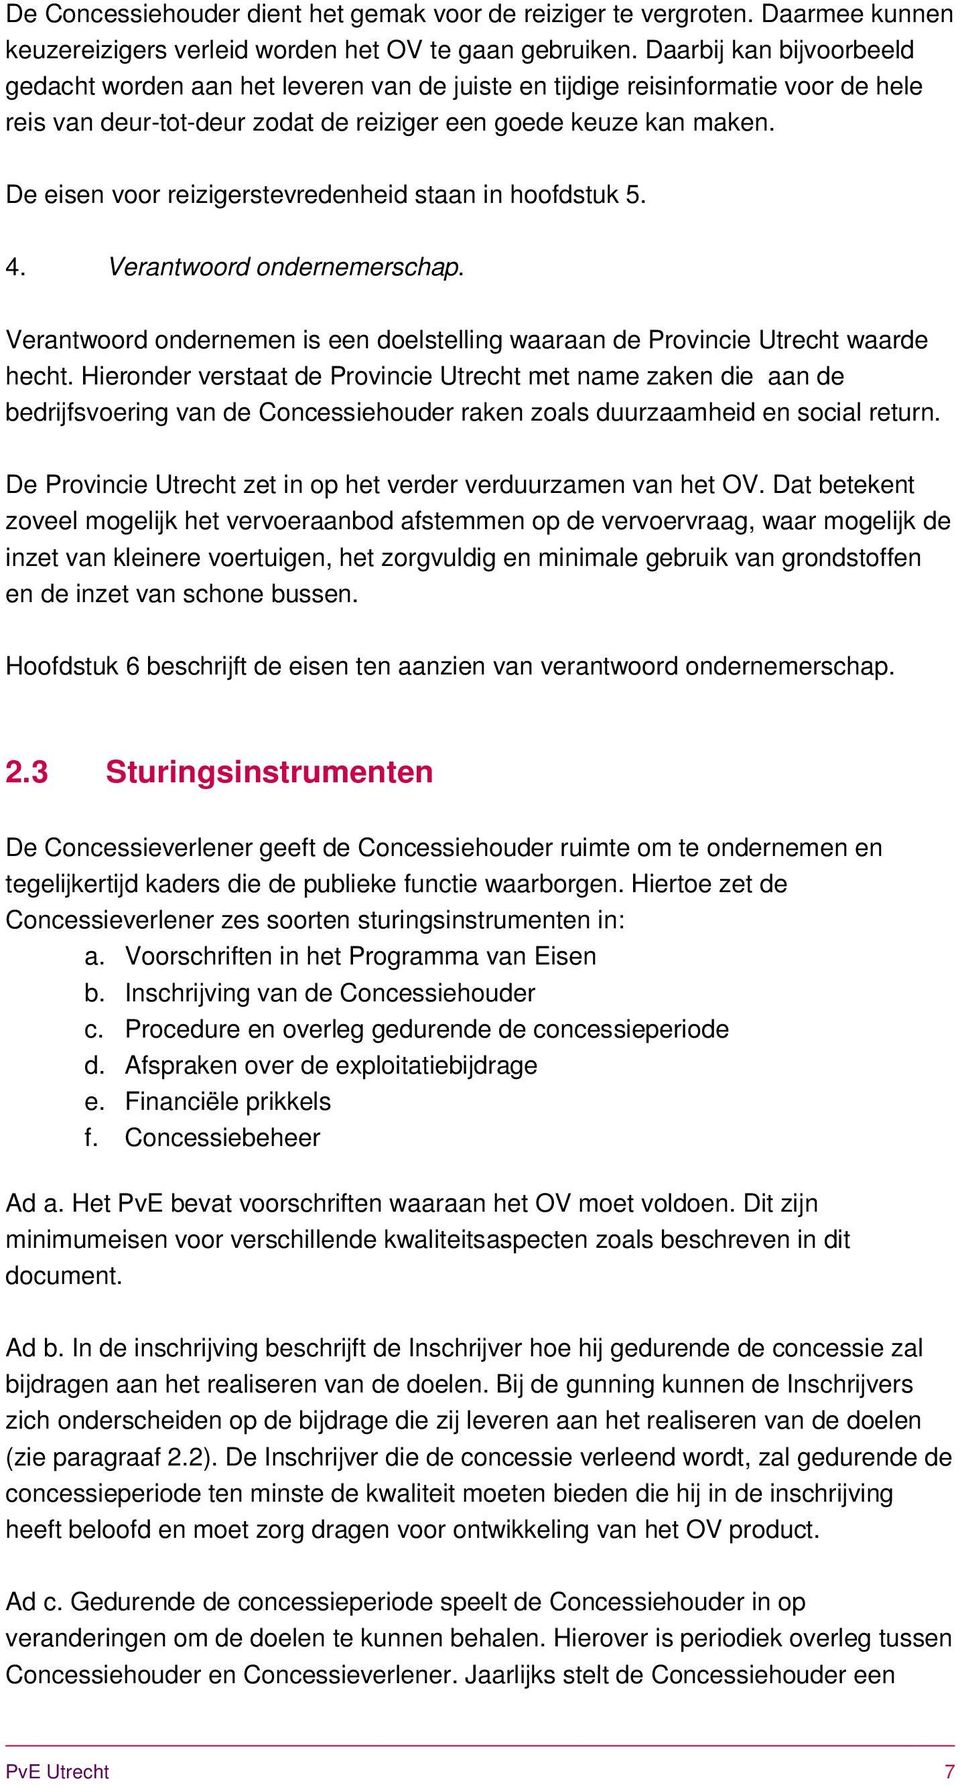 De eisen voor reizigerstevredenheid staan in hoofdstuk 5. 4. Verantwoord ondernemerschap. Verantwoord ondernemen is een doelstelling waaraan de Provincie Utrecht waarde hecht.